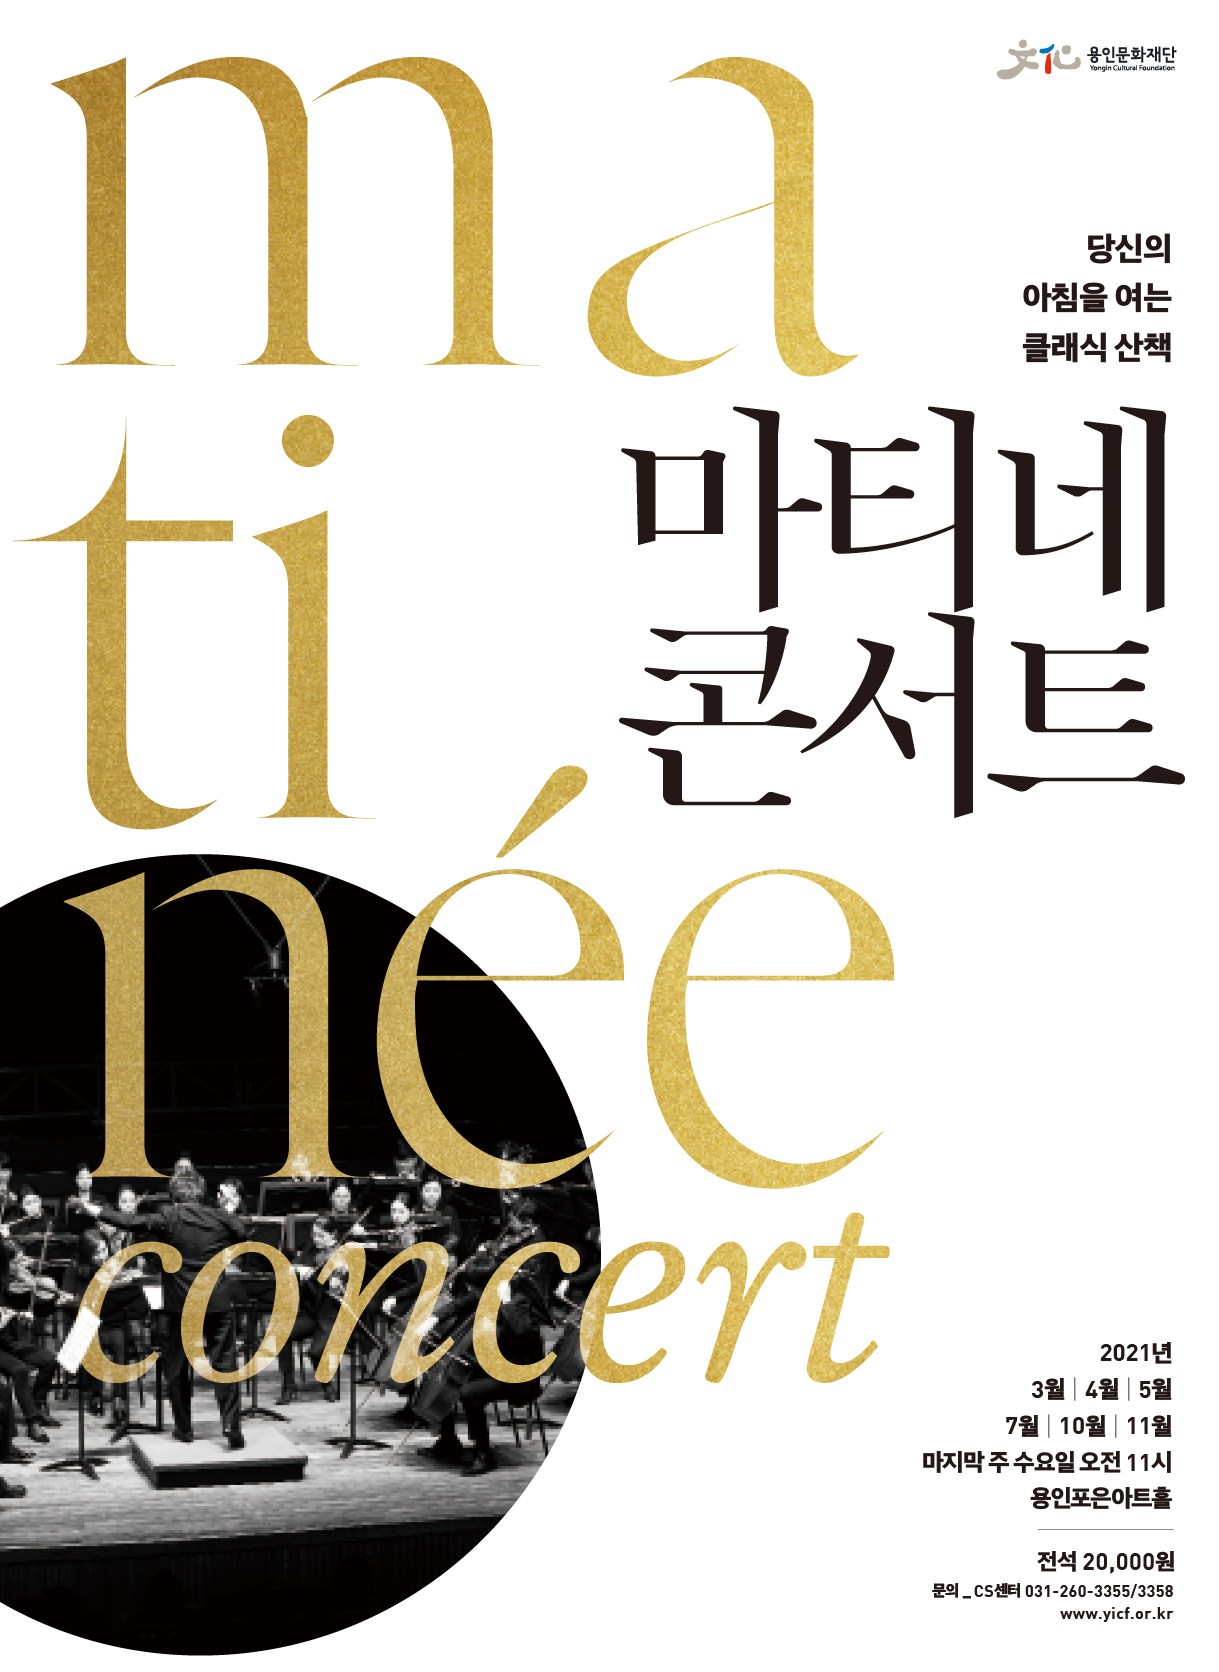 '경기도 문화의 날' 2021 마티네 콘서트 5월 <오페라 갈라콘서트-리골레토>  홍보포스터